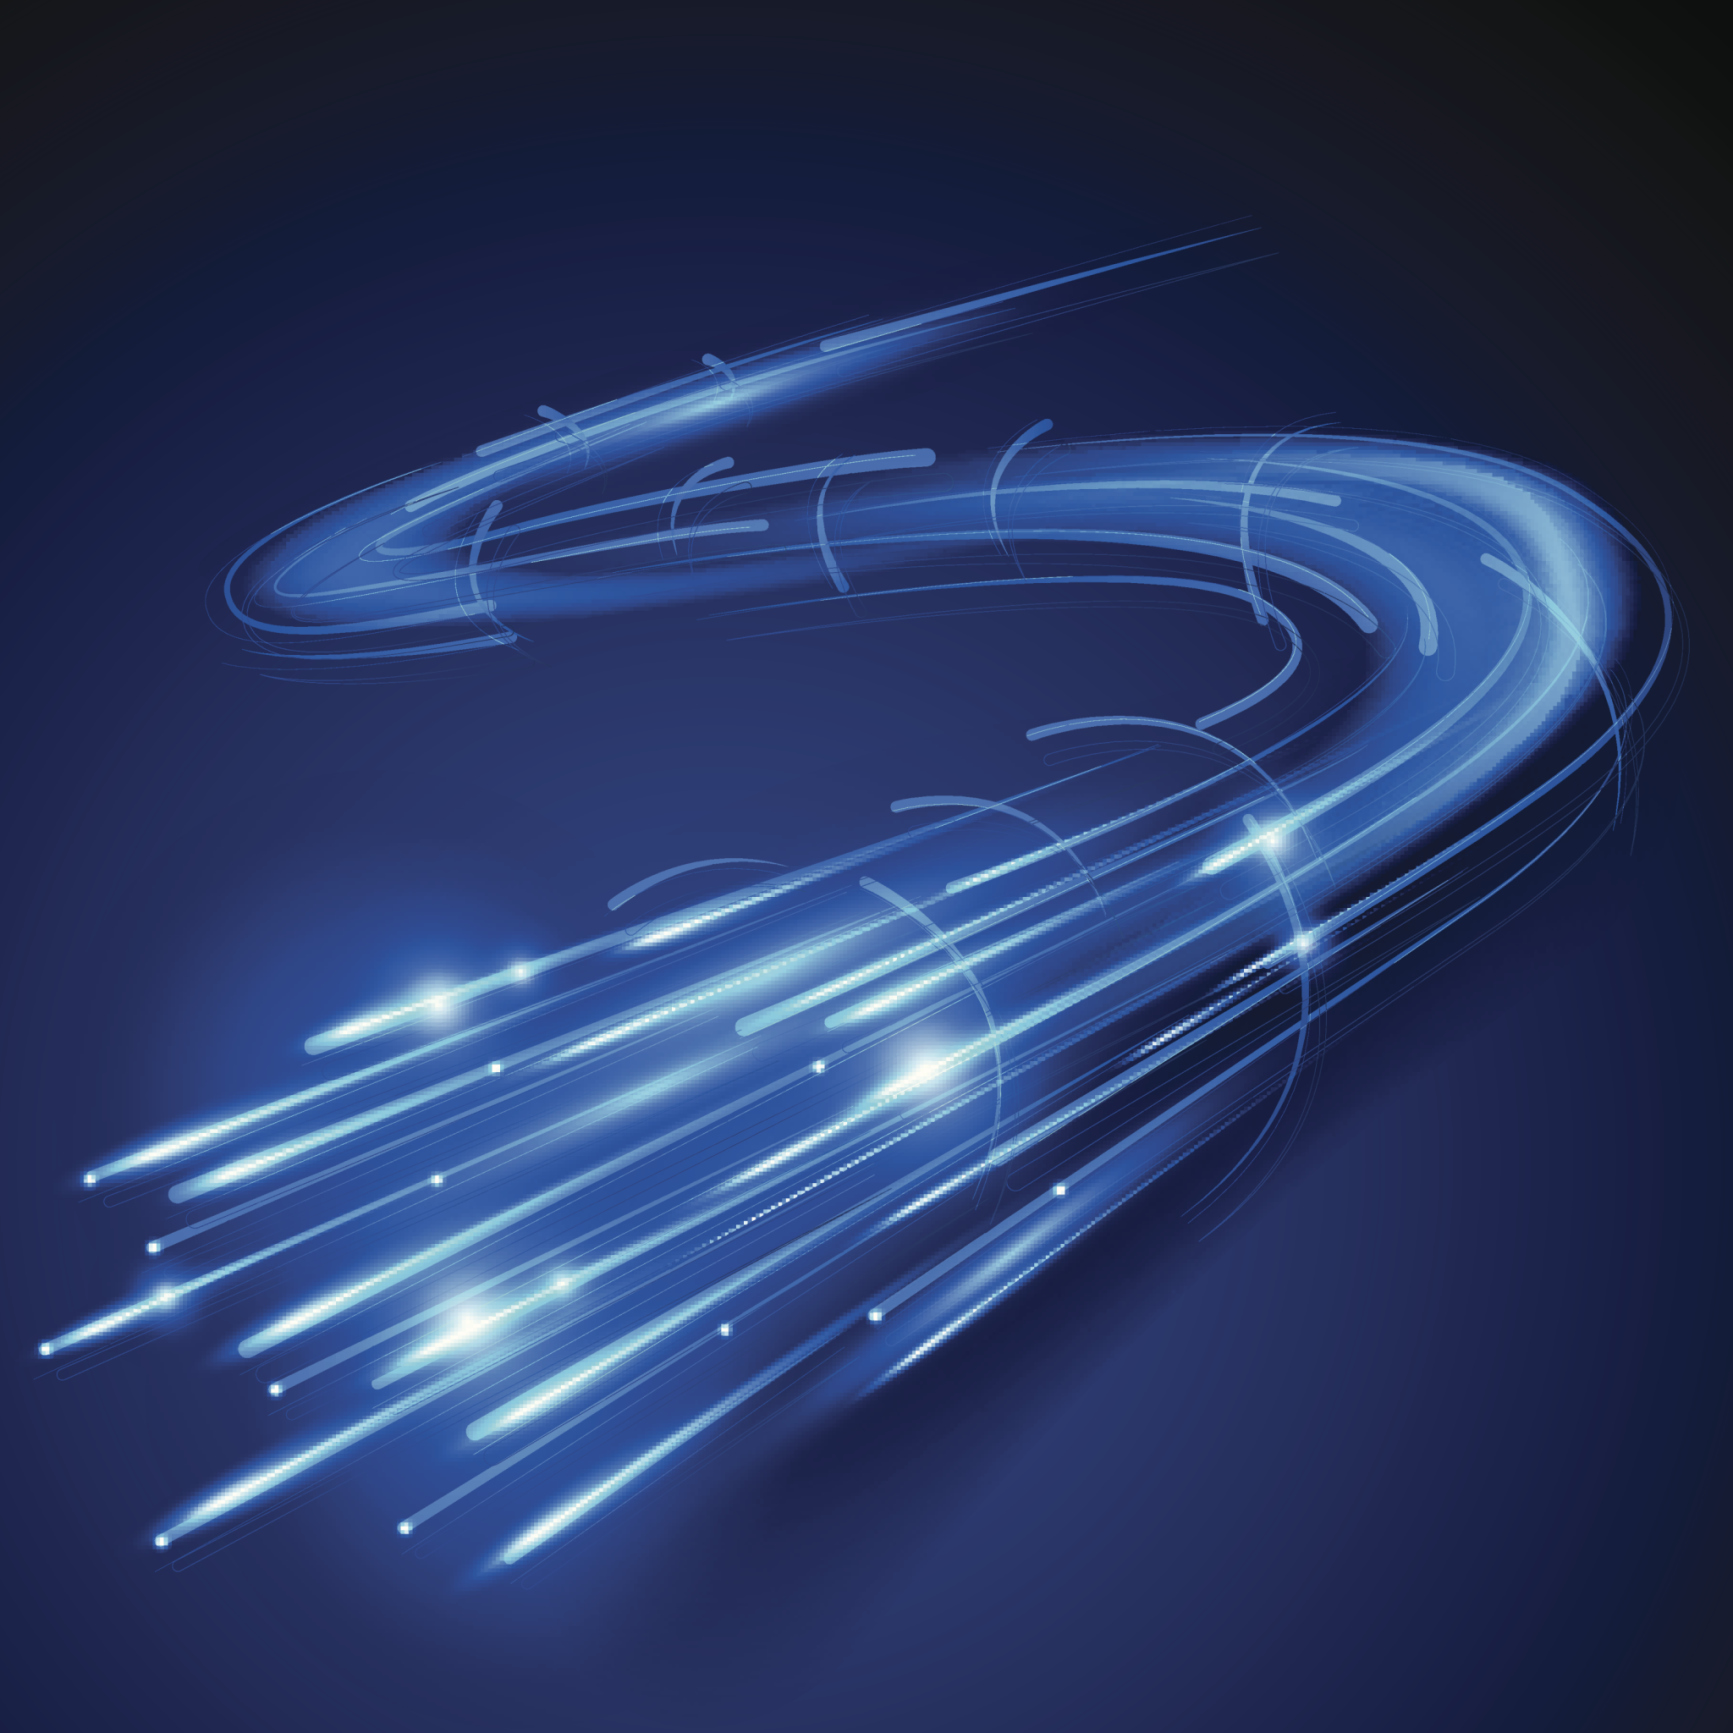 La France au 28ème rang des pays équipés en fibre optique